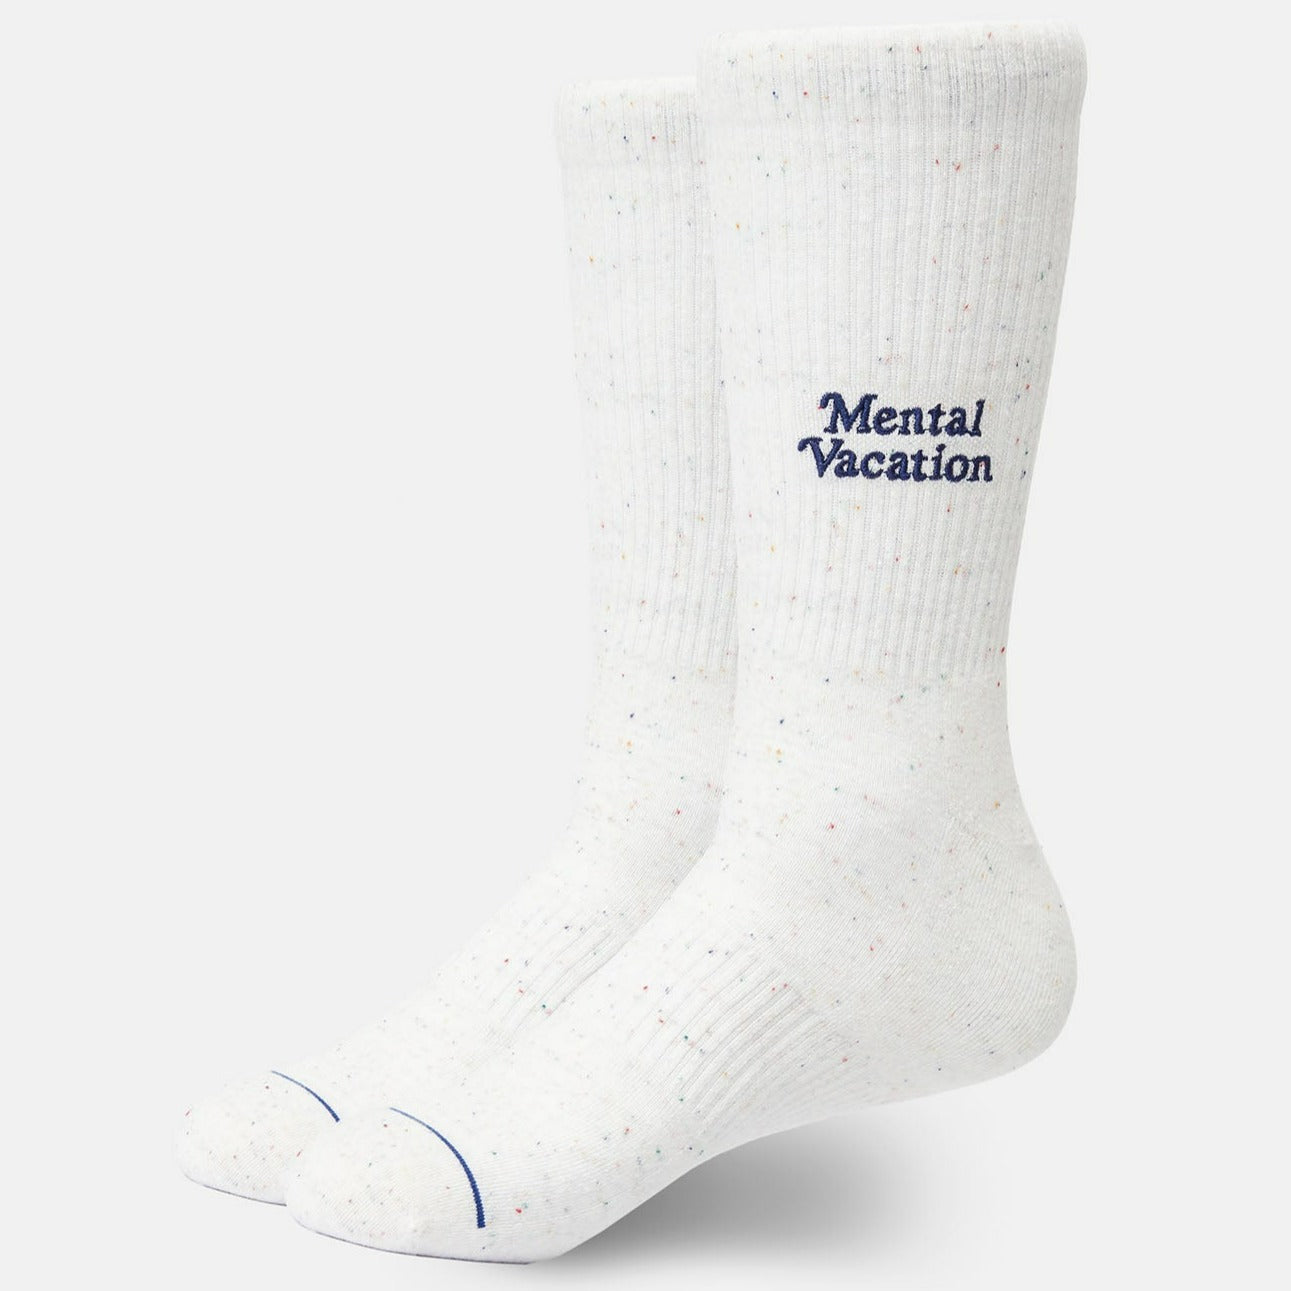 Katin USA - Mental Vacation Socks